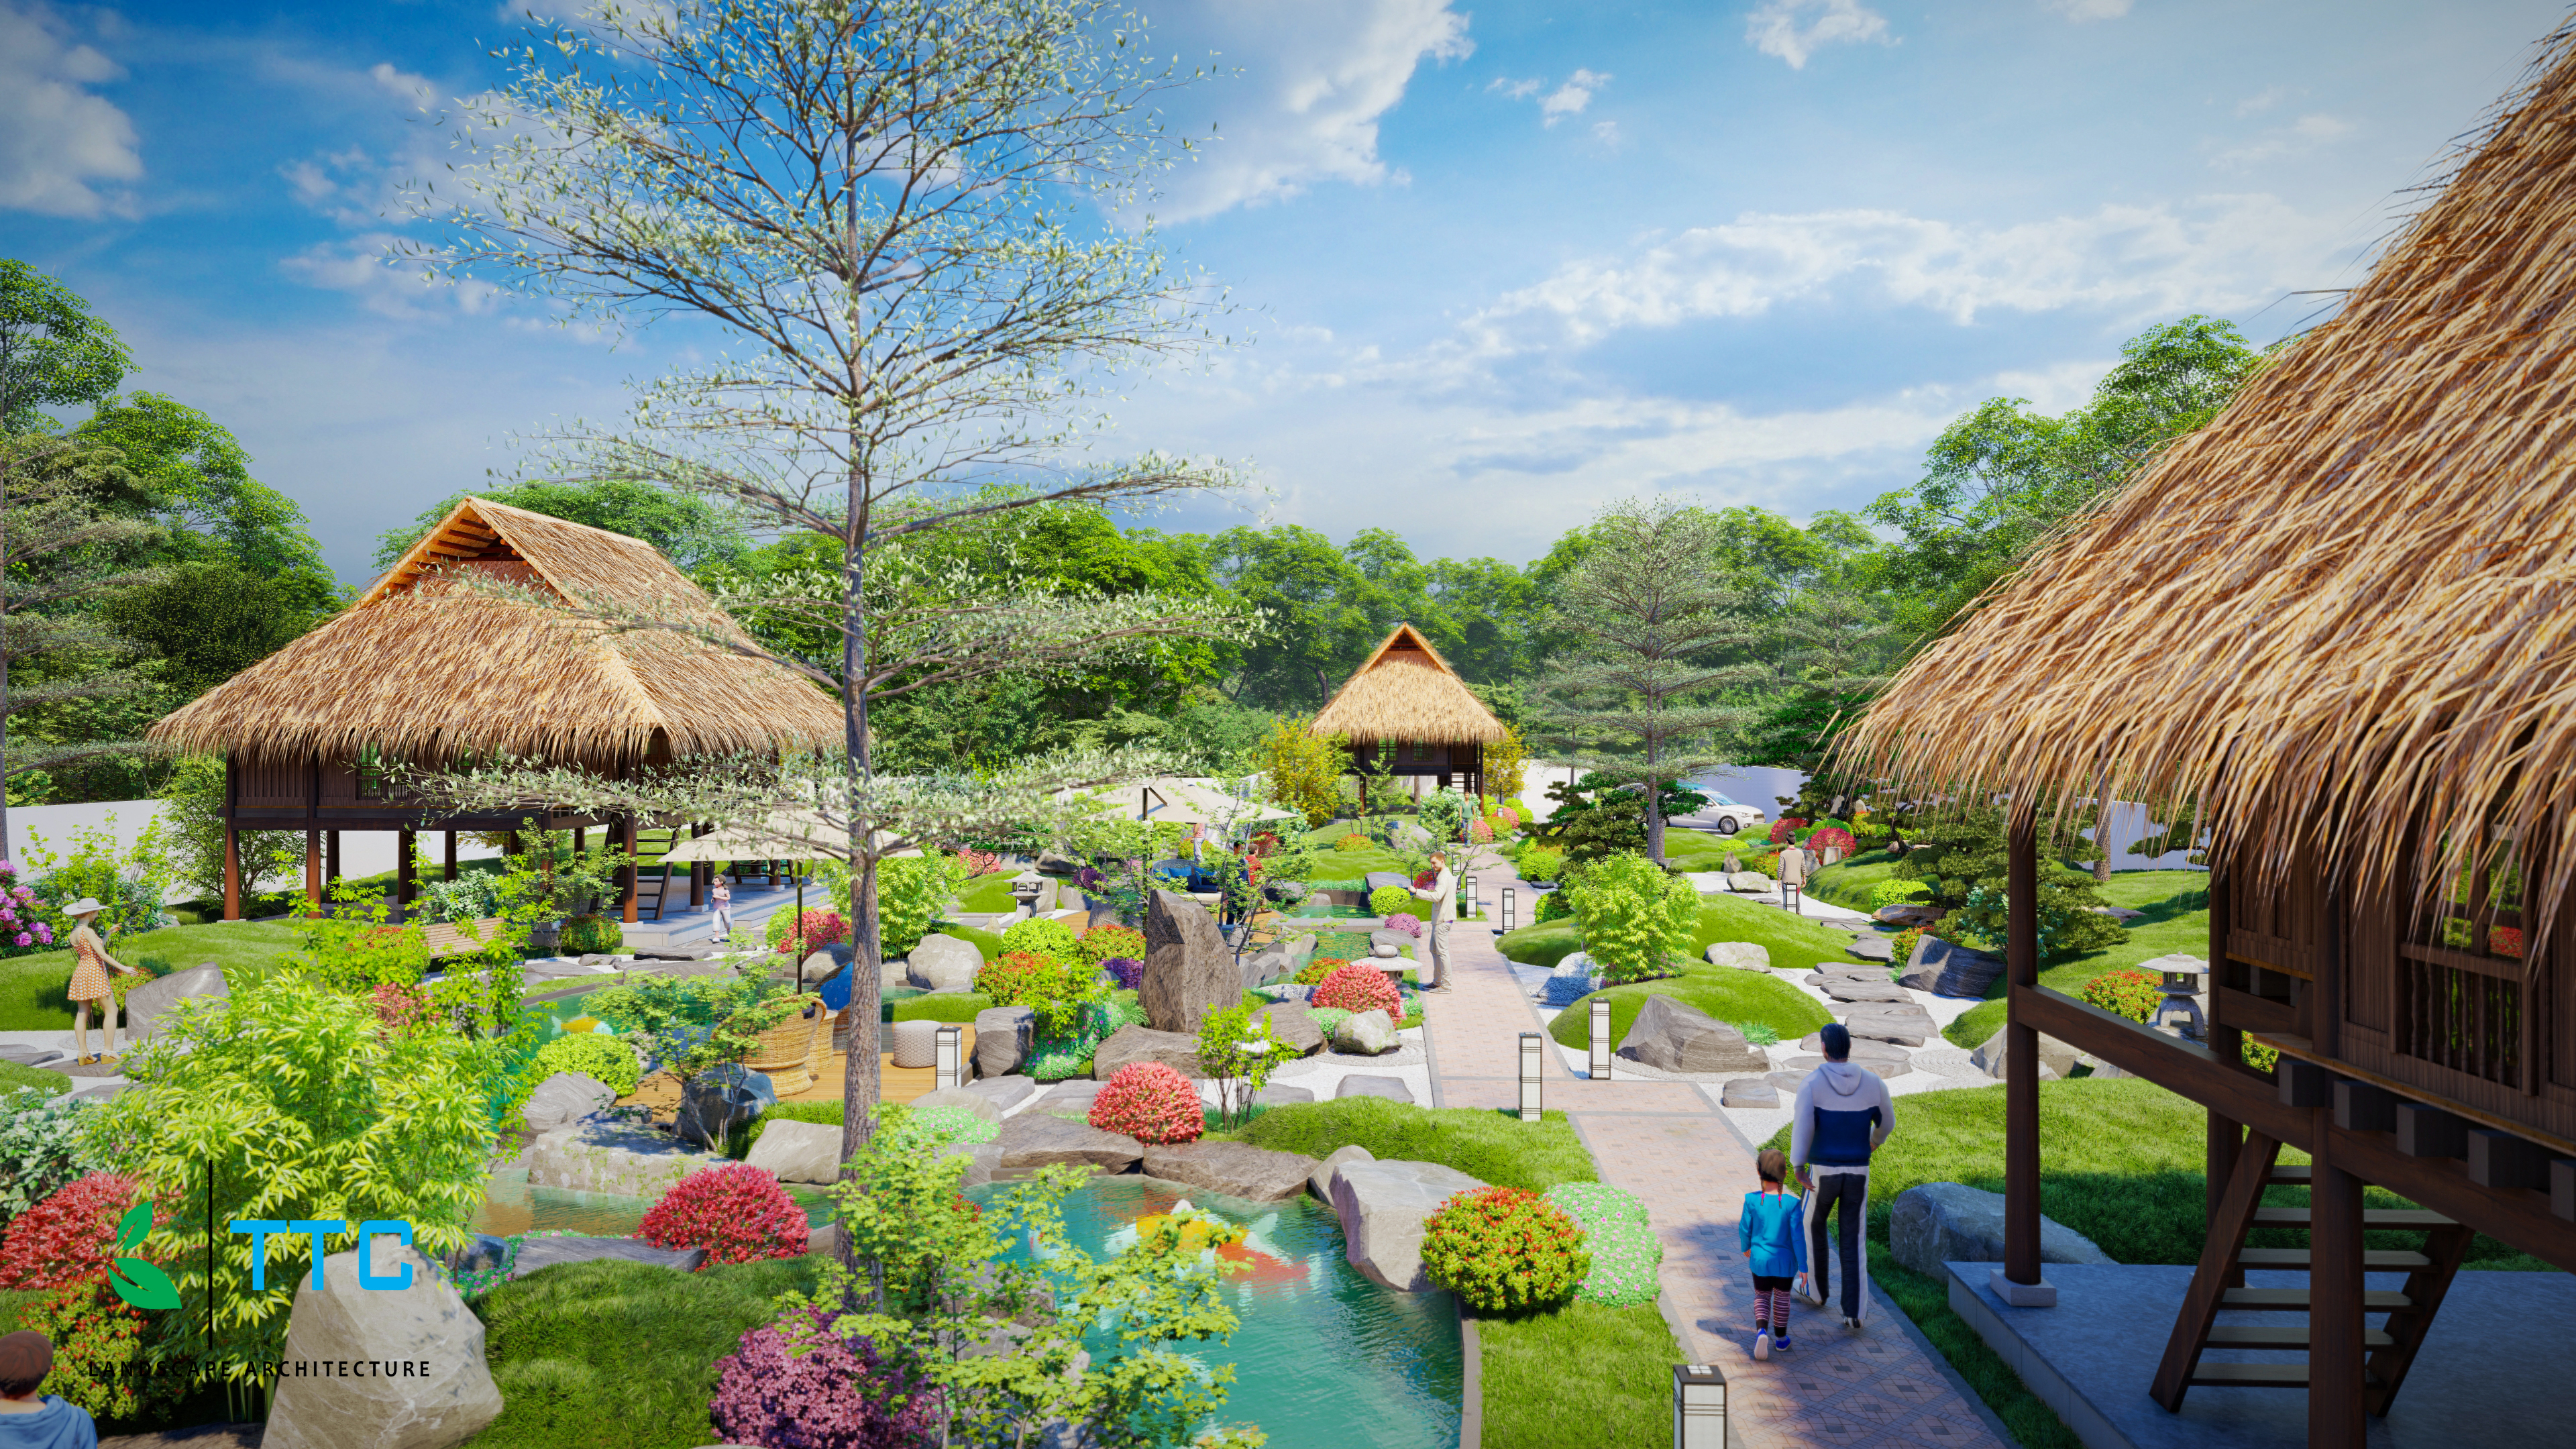 Thiết kế Resort tại Đắk Lắk SÂN VƯỜN NHẬT BẢN ĐAKLAK 1647099457 6